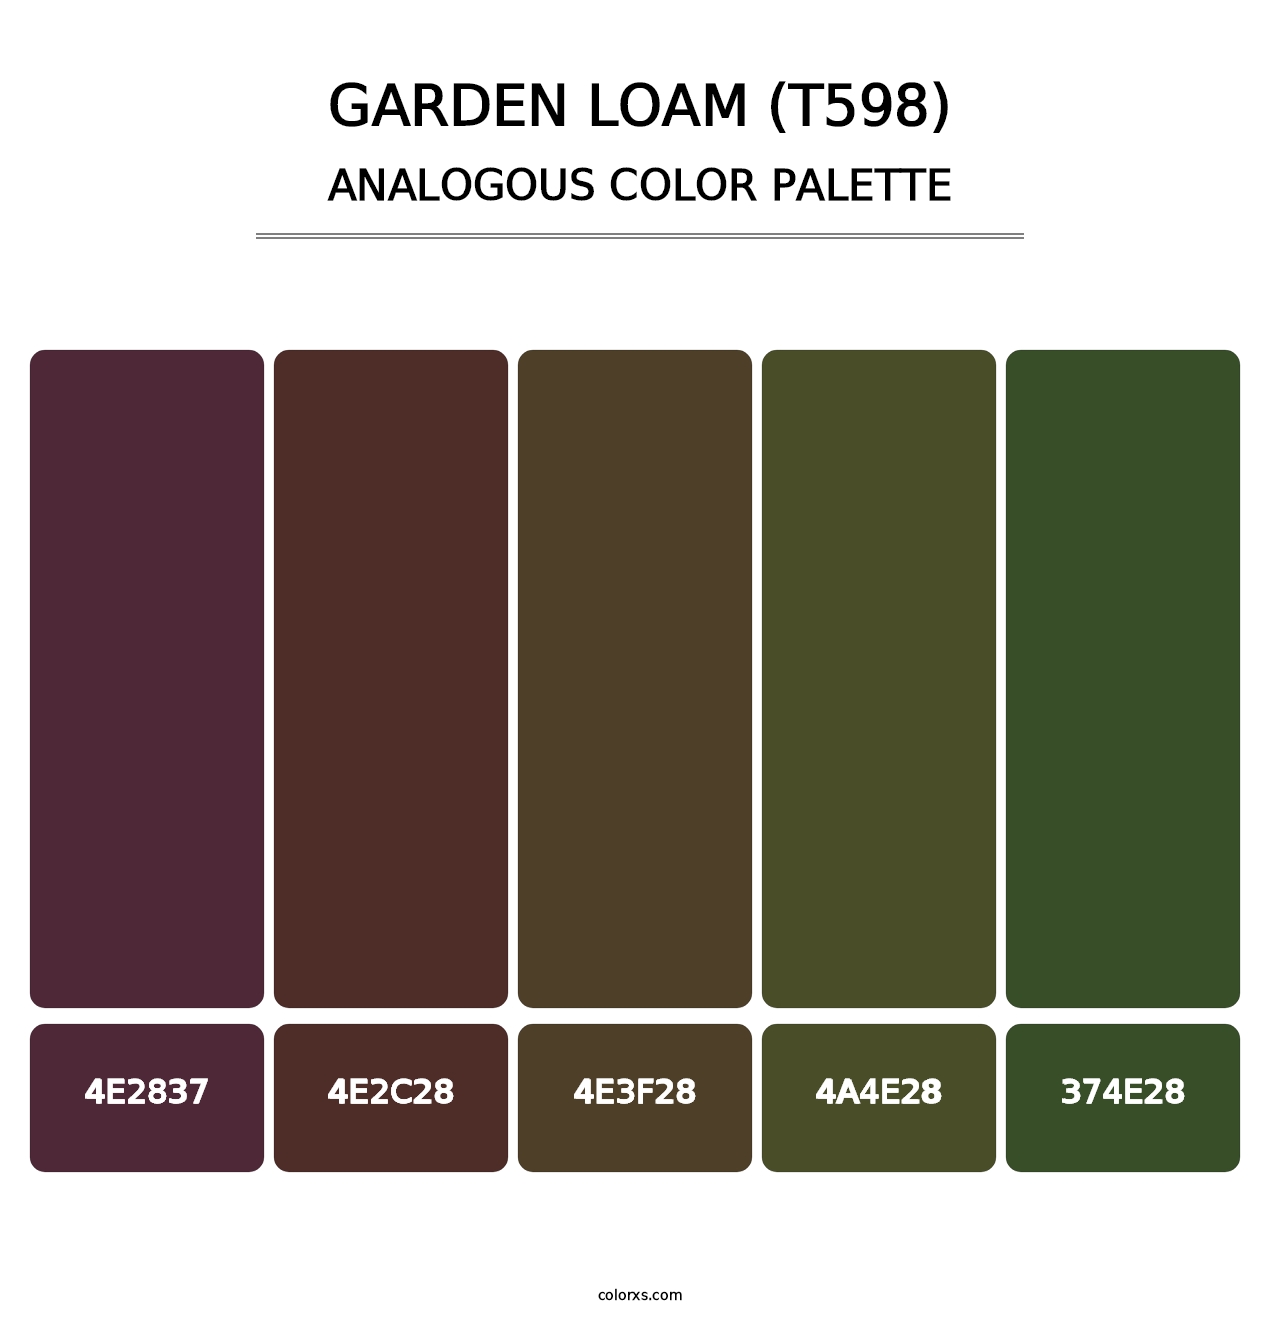 Garden Loam (T598) - Analogous Color Palette